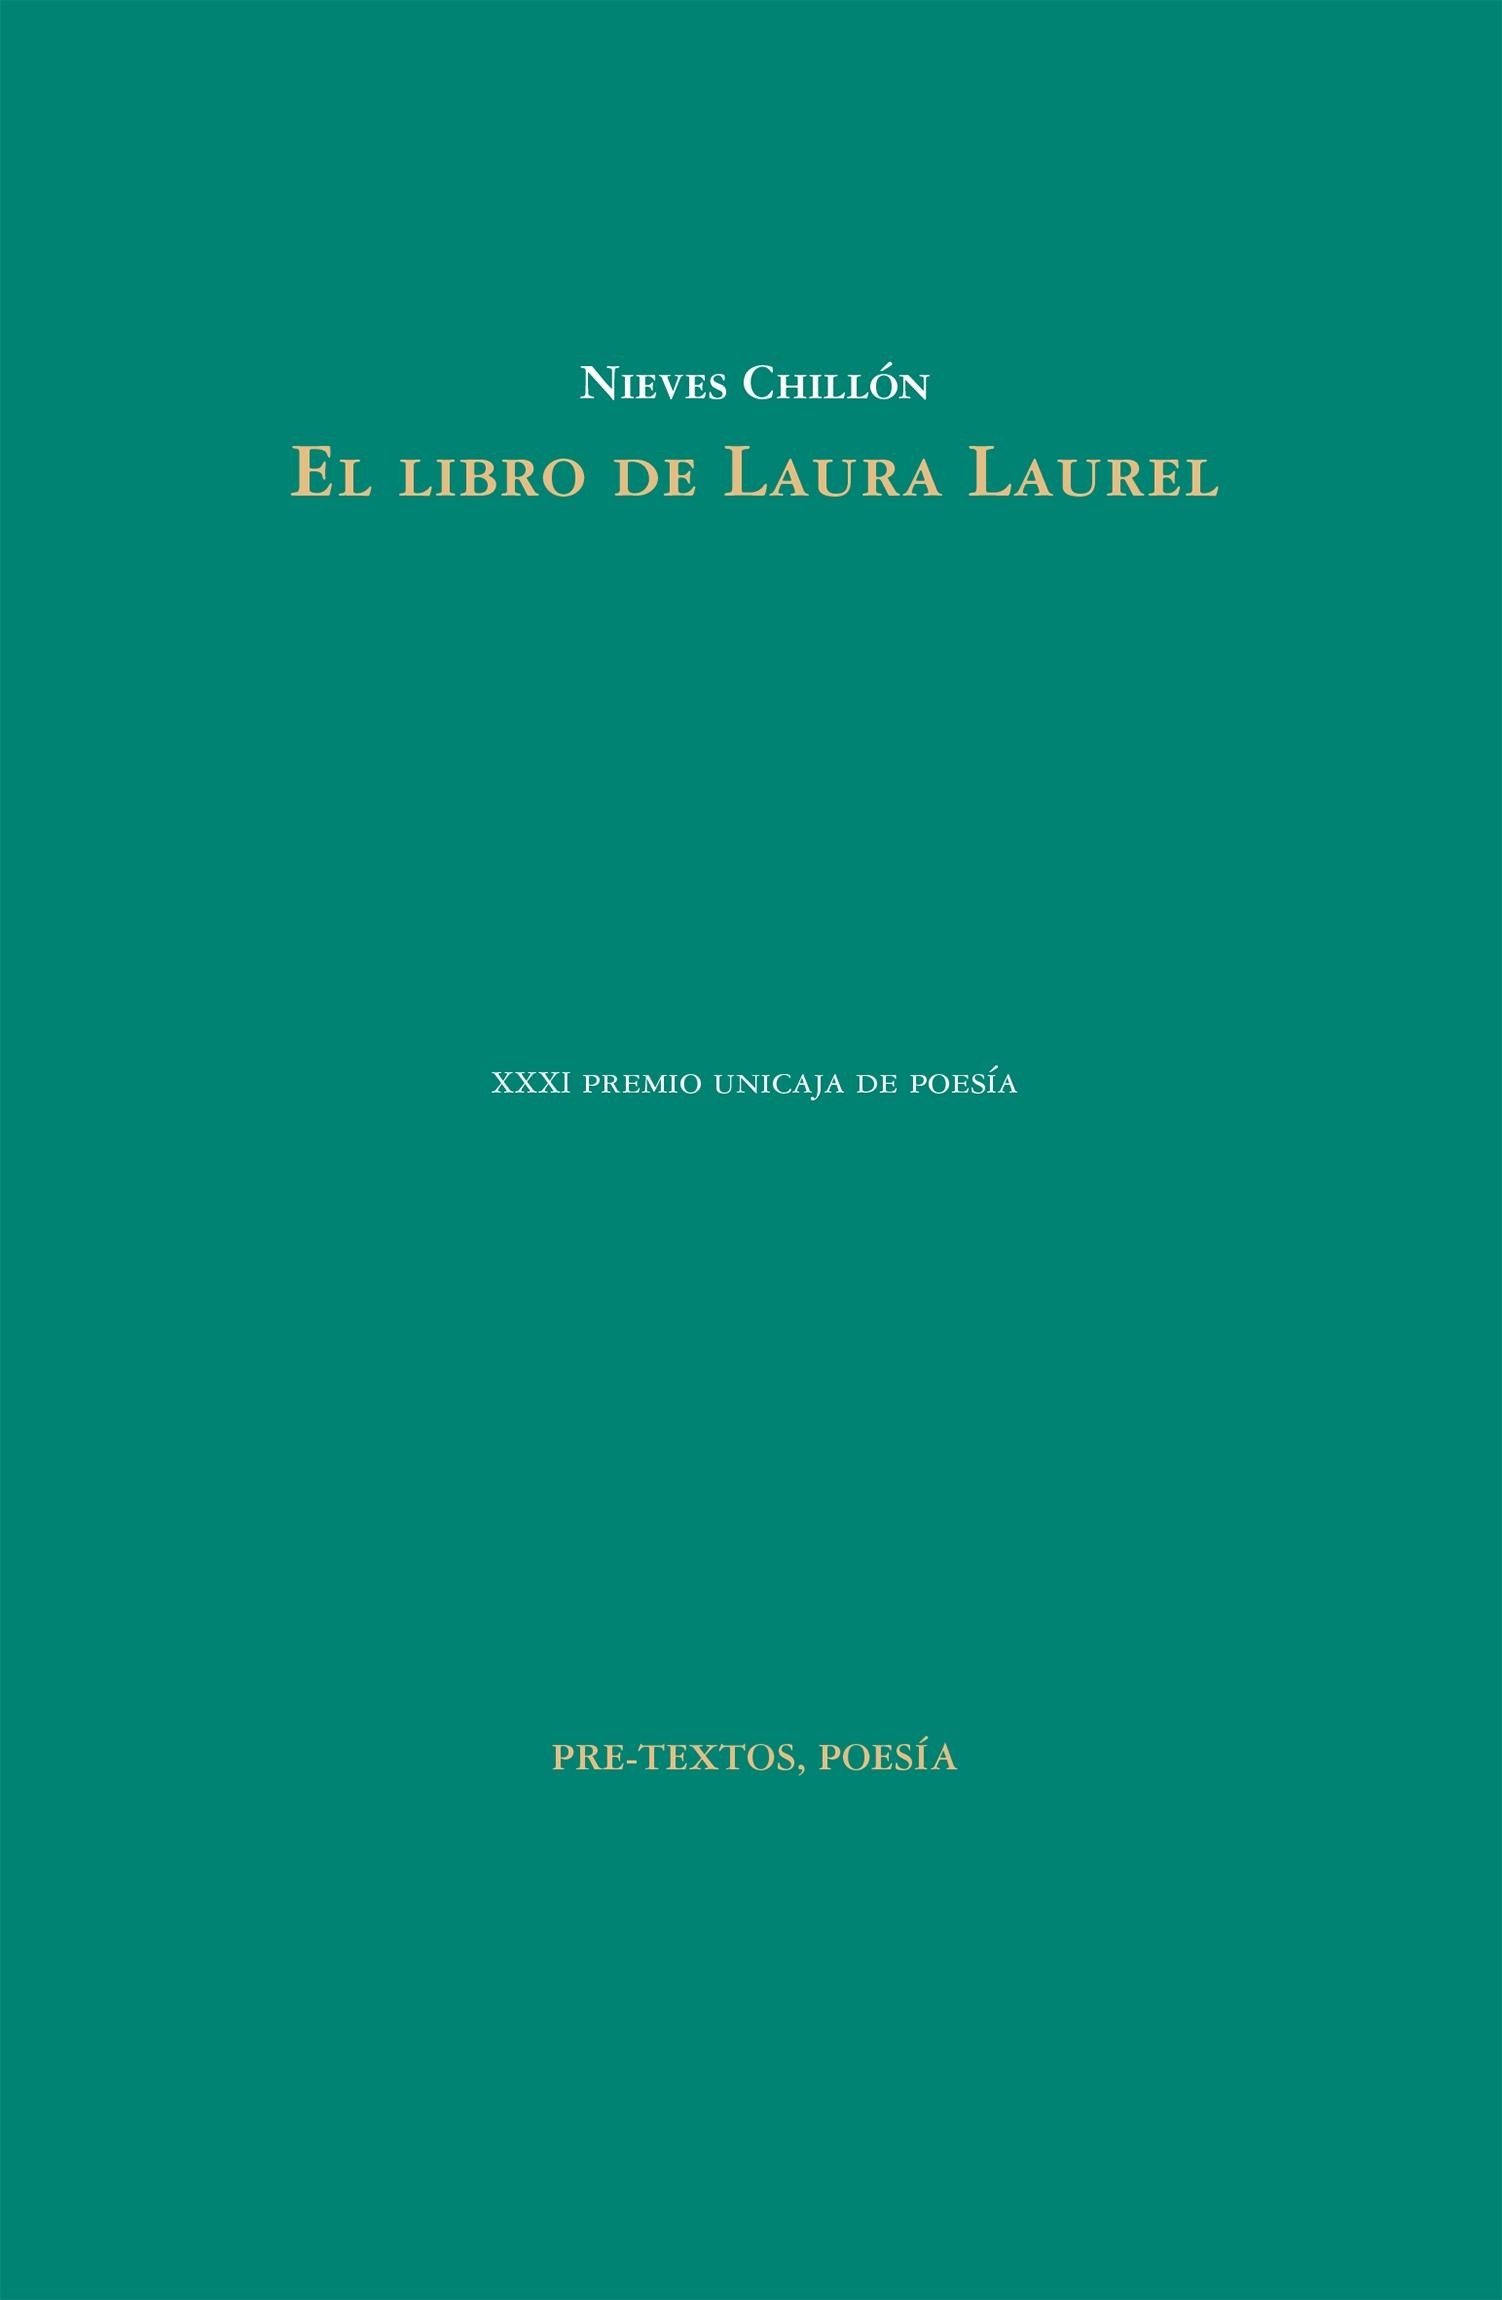 El Libro de Laura Laurel. 